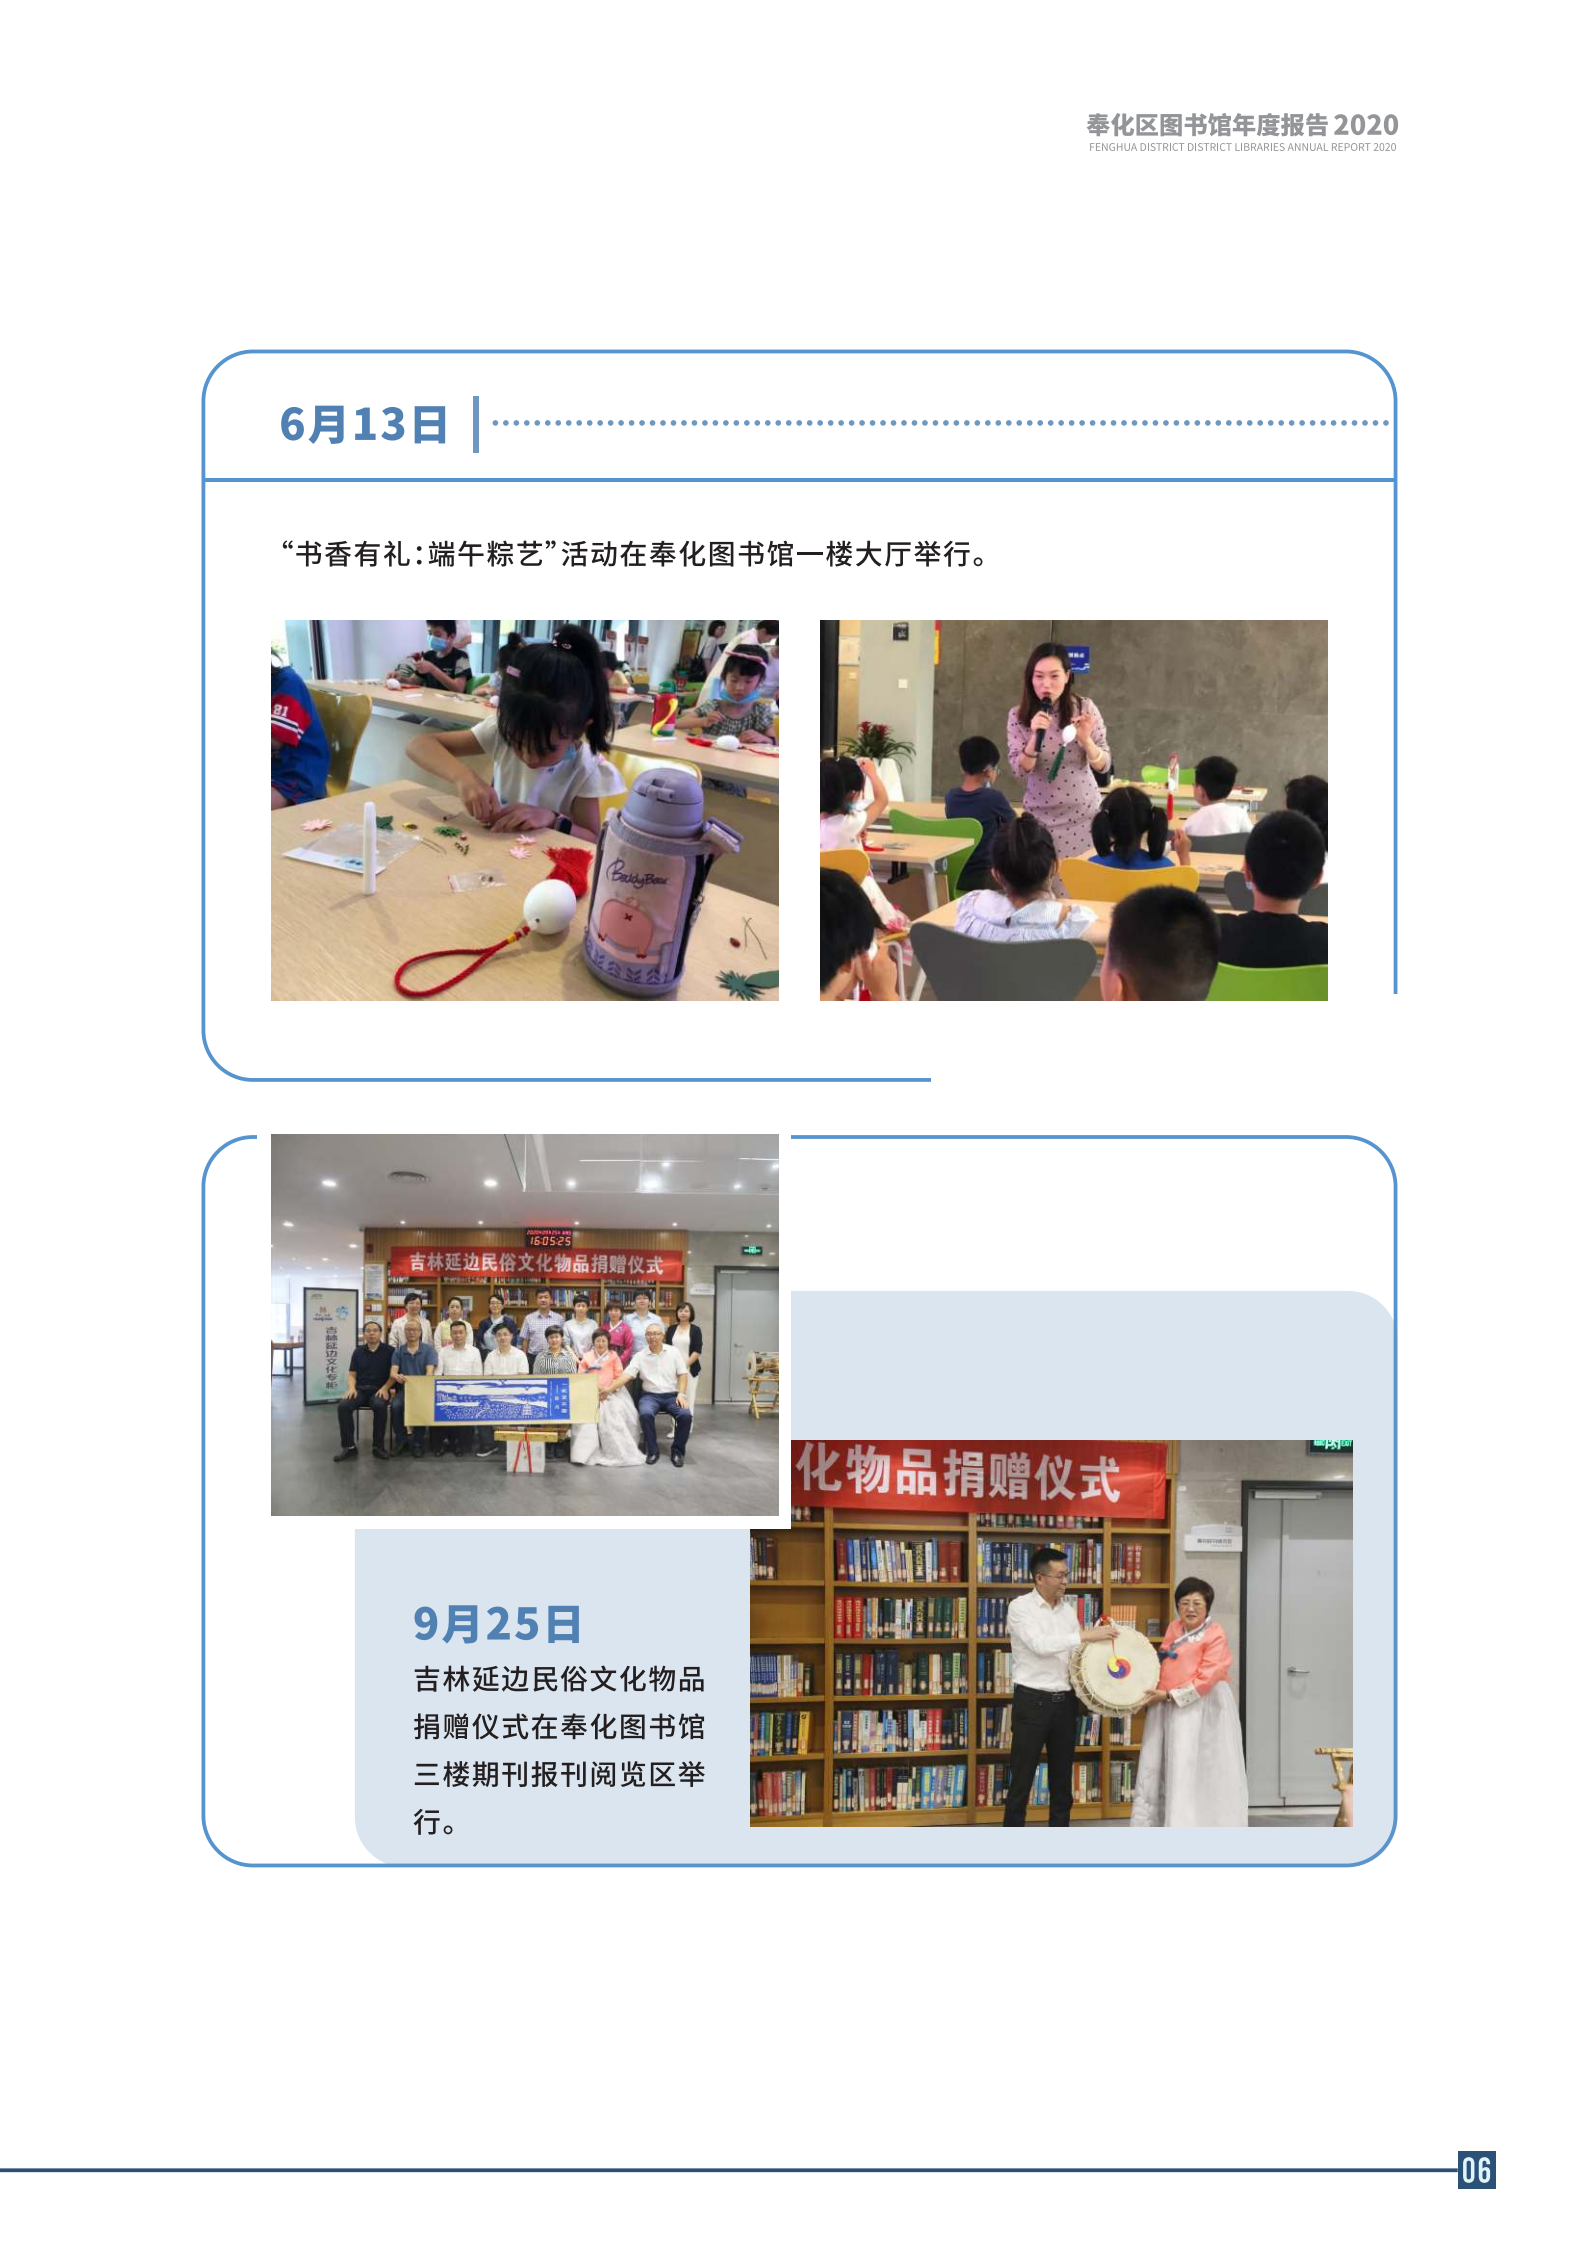 宁波市奉化区图书馆2020年年度报告 终稿_06.png